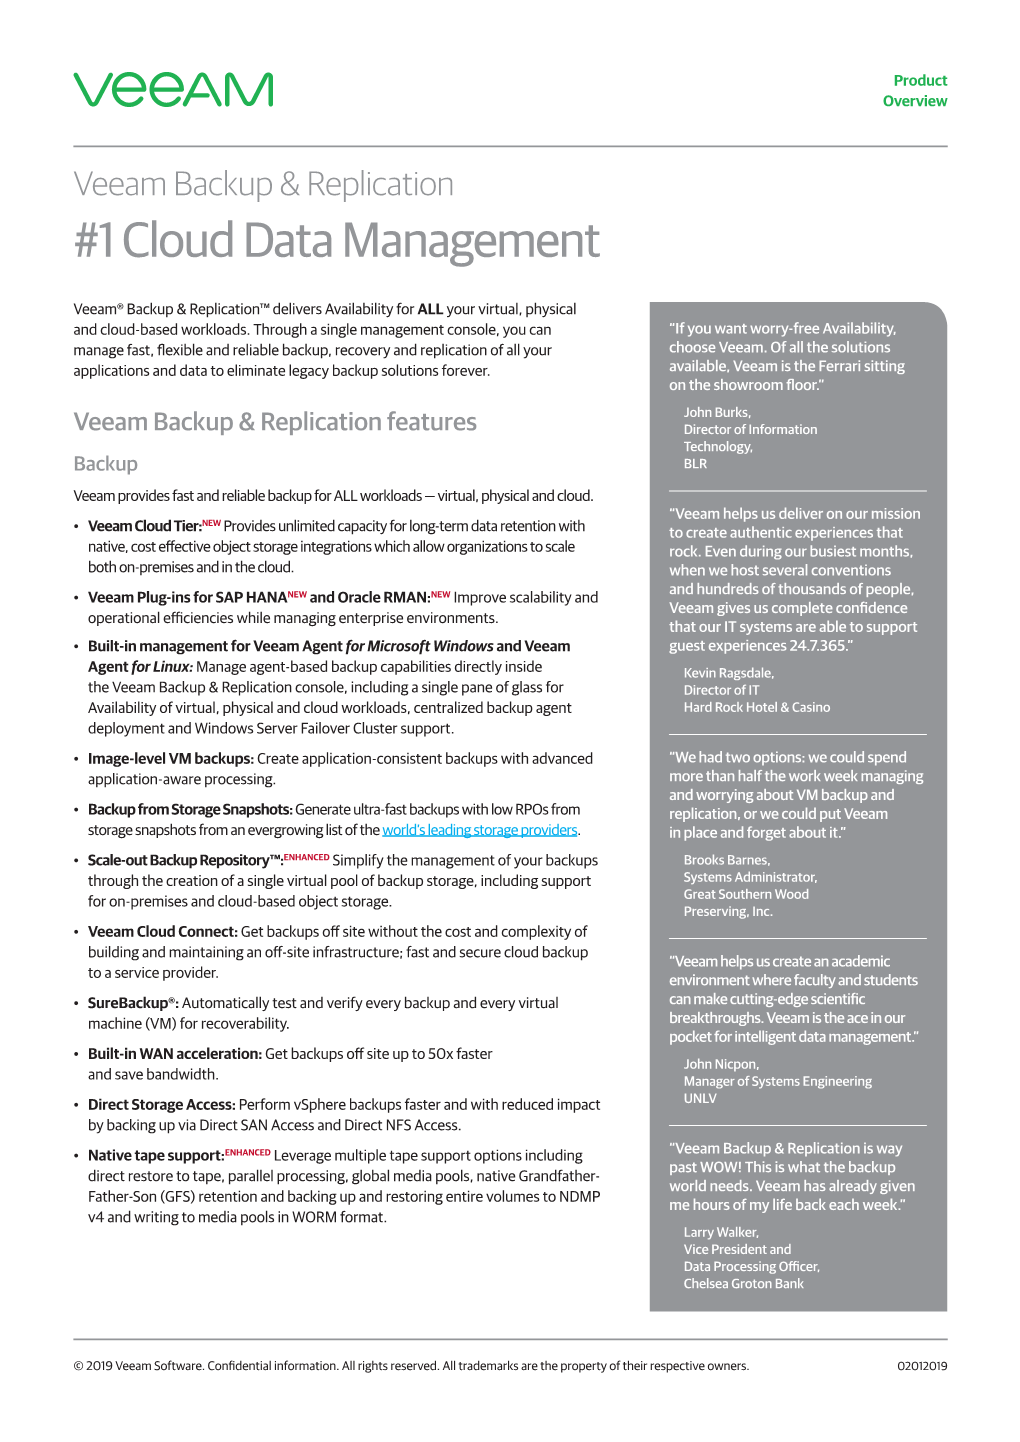 1 Cloud Data Management